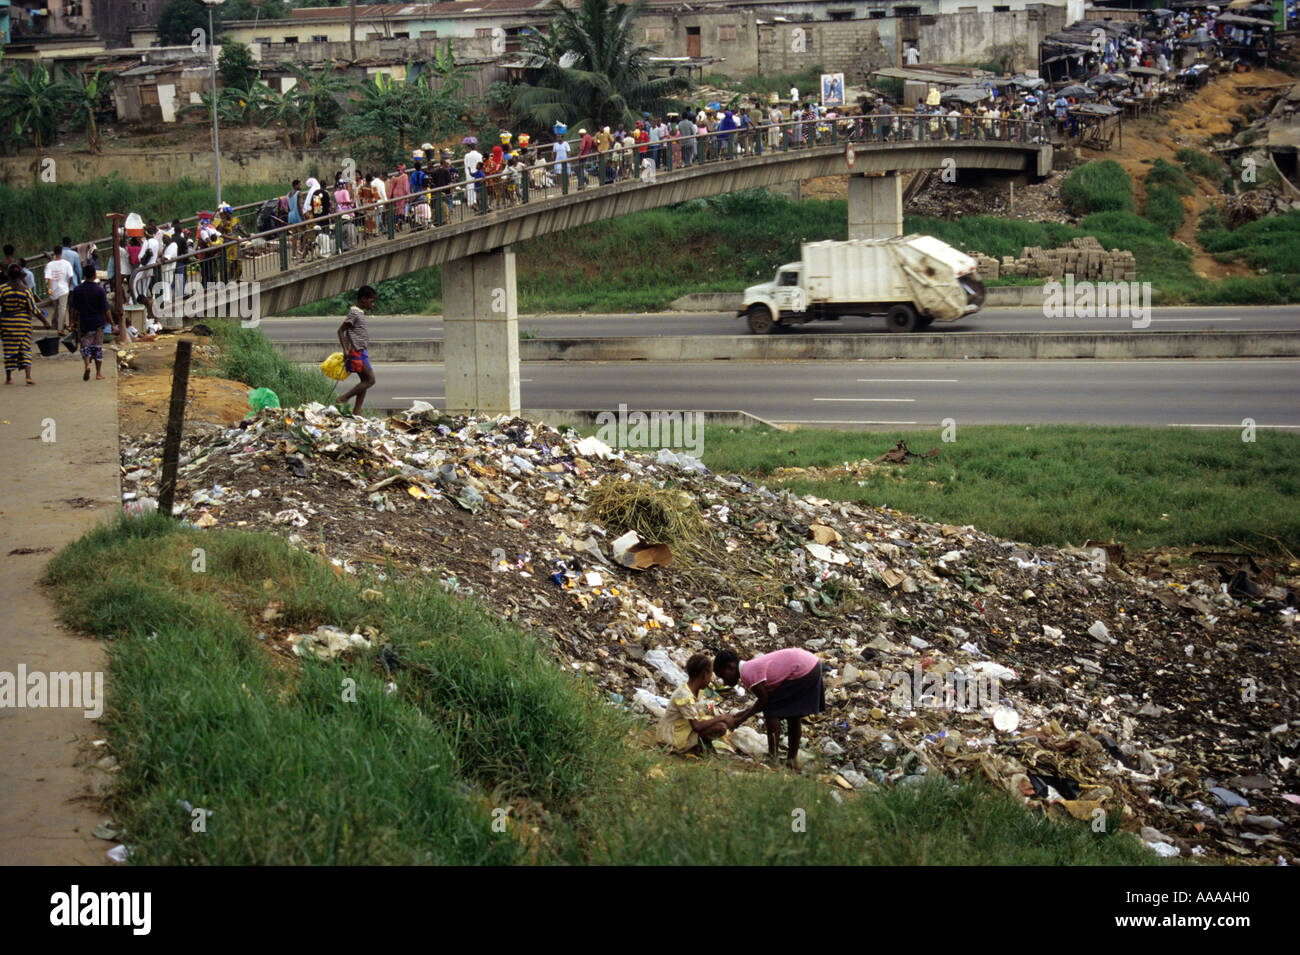 Abidjan, Costa de Marfil, Cote d'Ivoire, en el oeste de África. 'No en la ruta." camión recolector pasa el montón de basura sin parar. Foto de stock